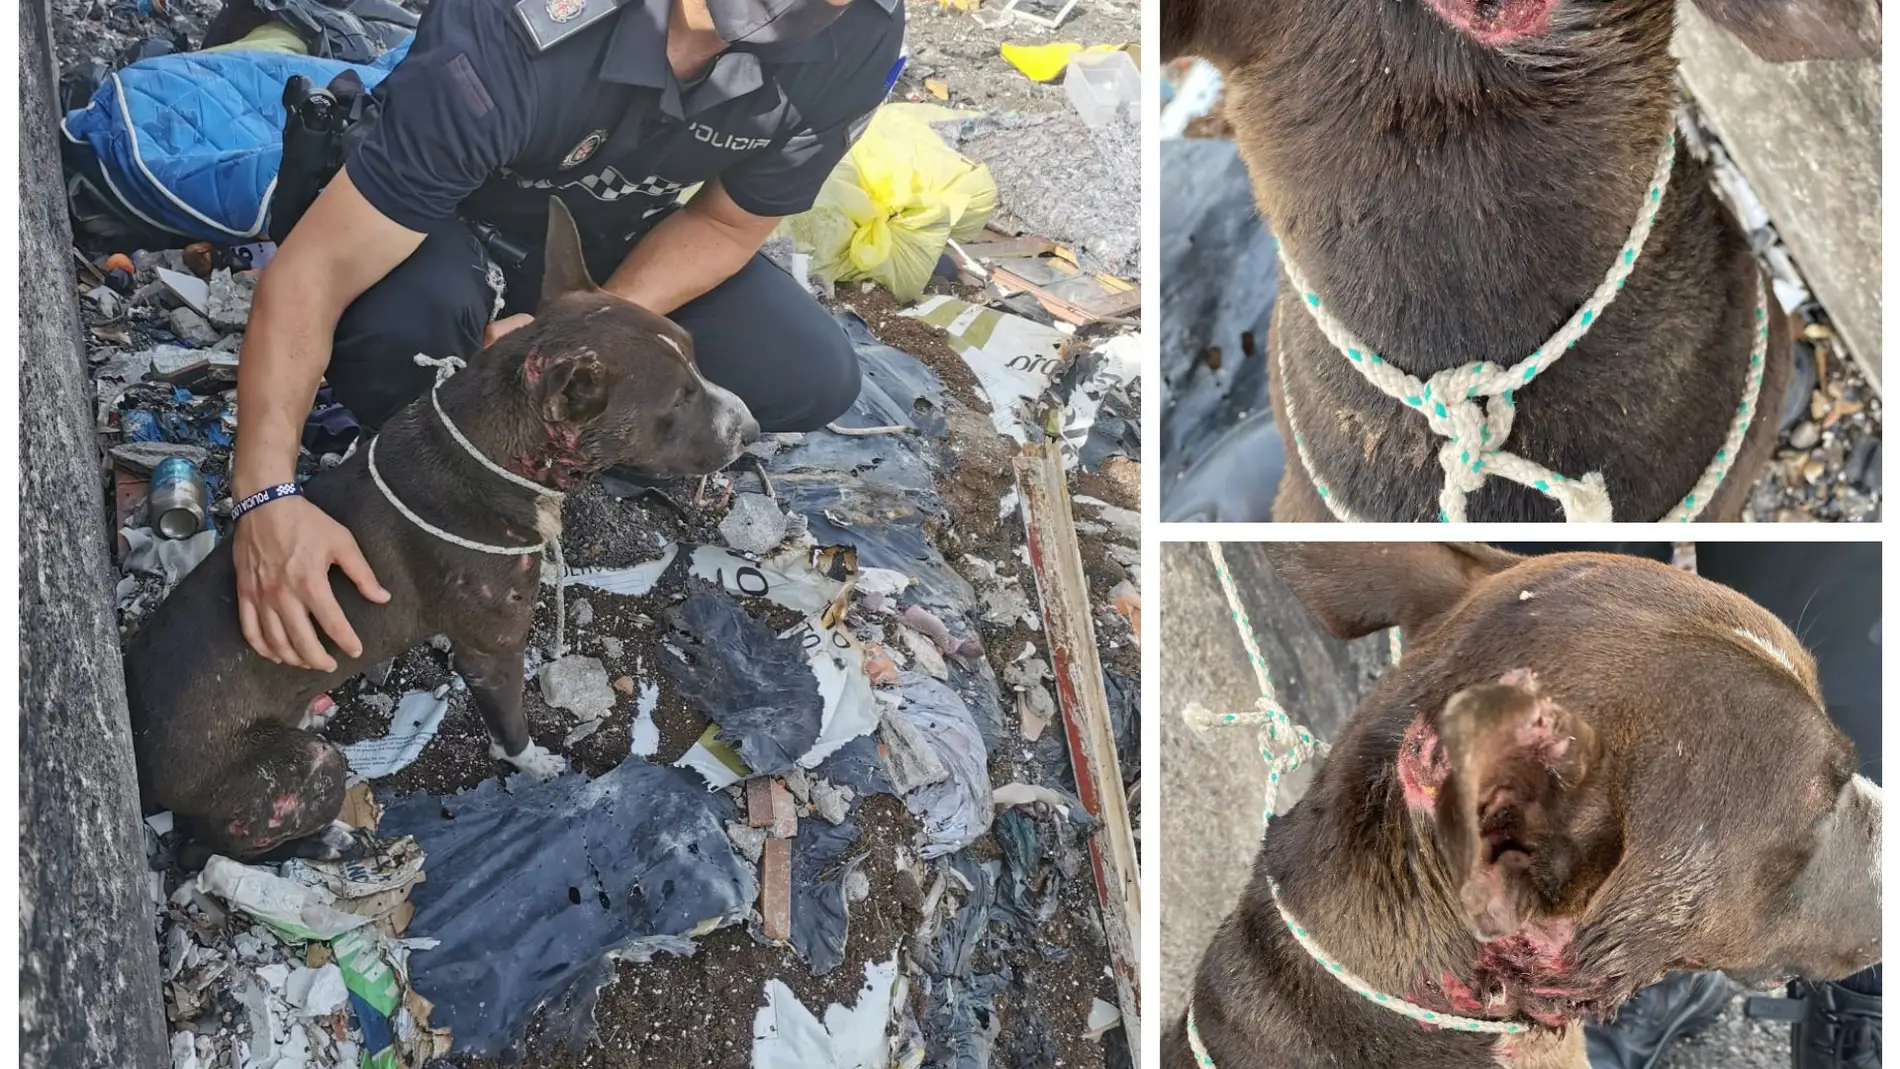 Rescatan a un perro arrojado vivo a una hoguera envuelto en una manta en Almería